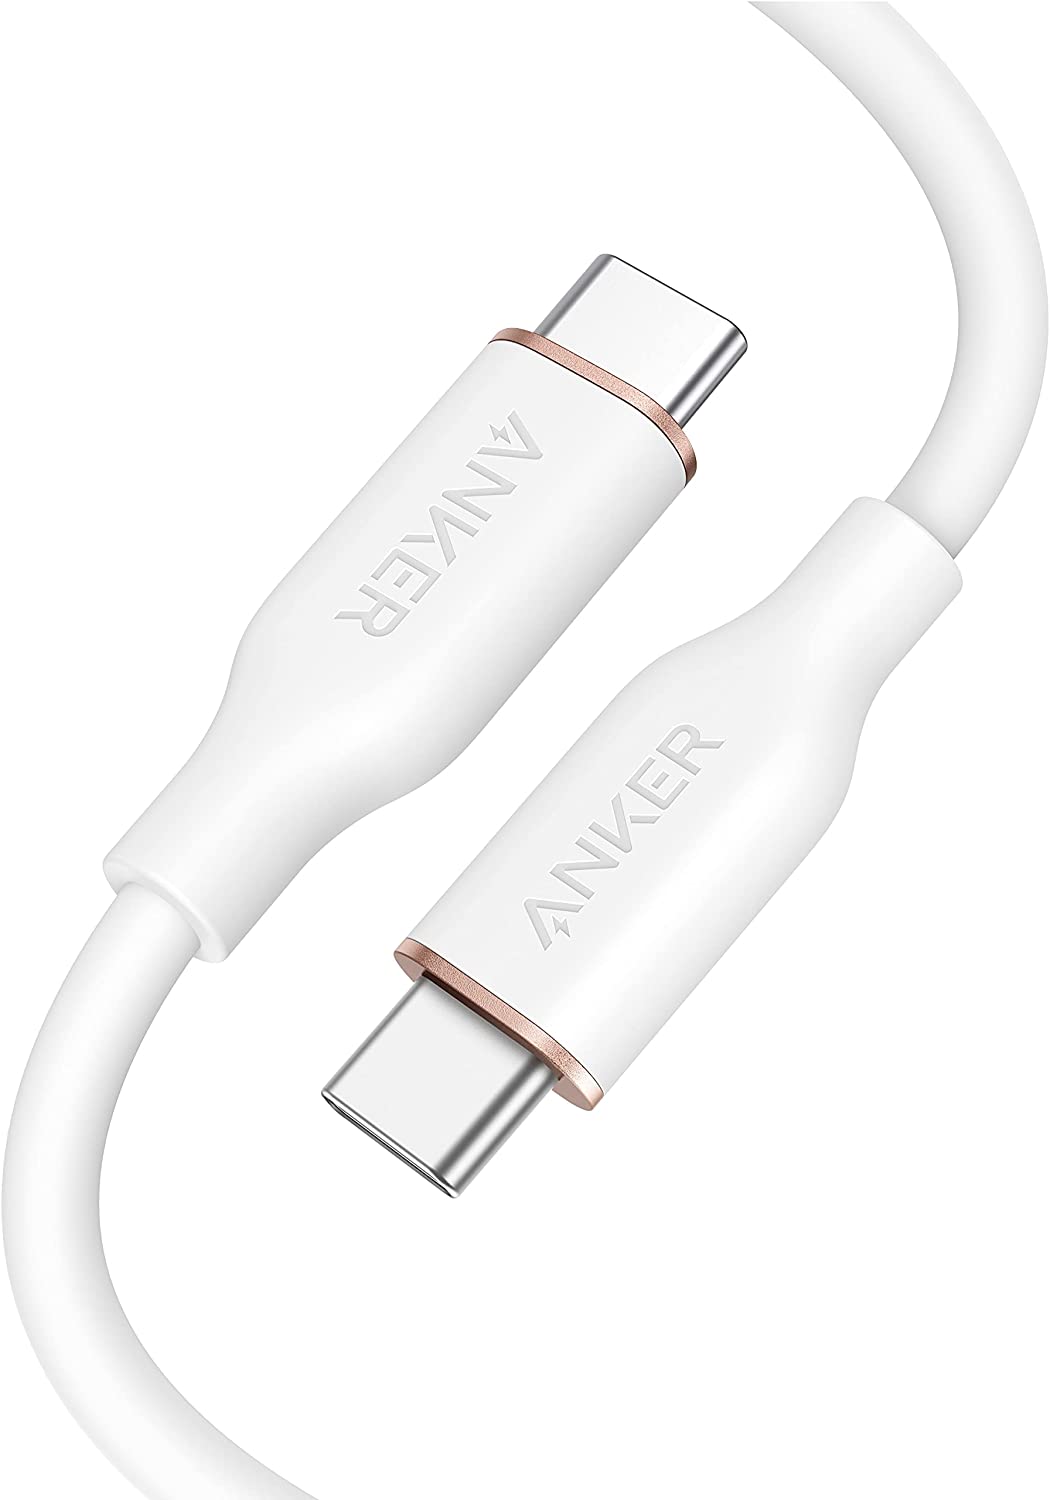 Powerline III Flow USB-C to USB-C 100W Cable